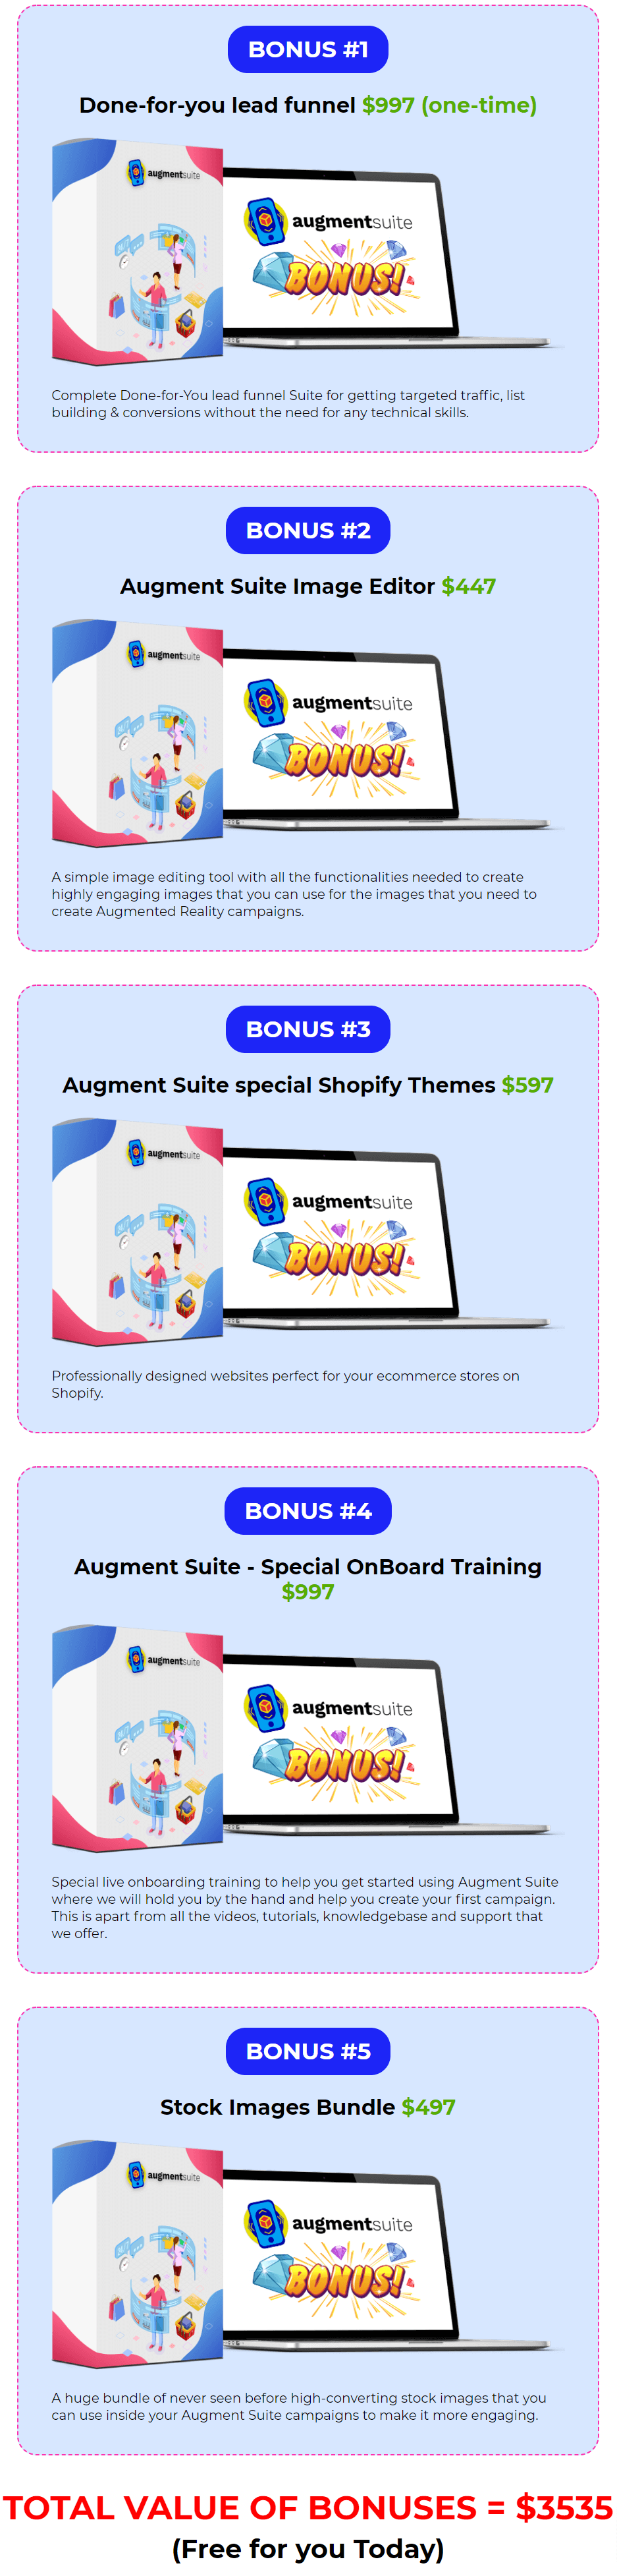 Augment-Suite bonus